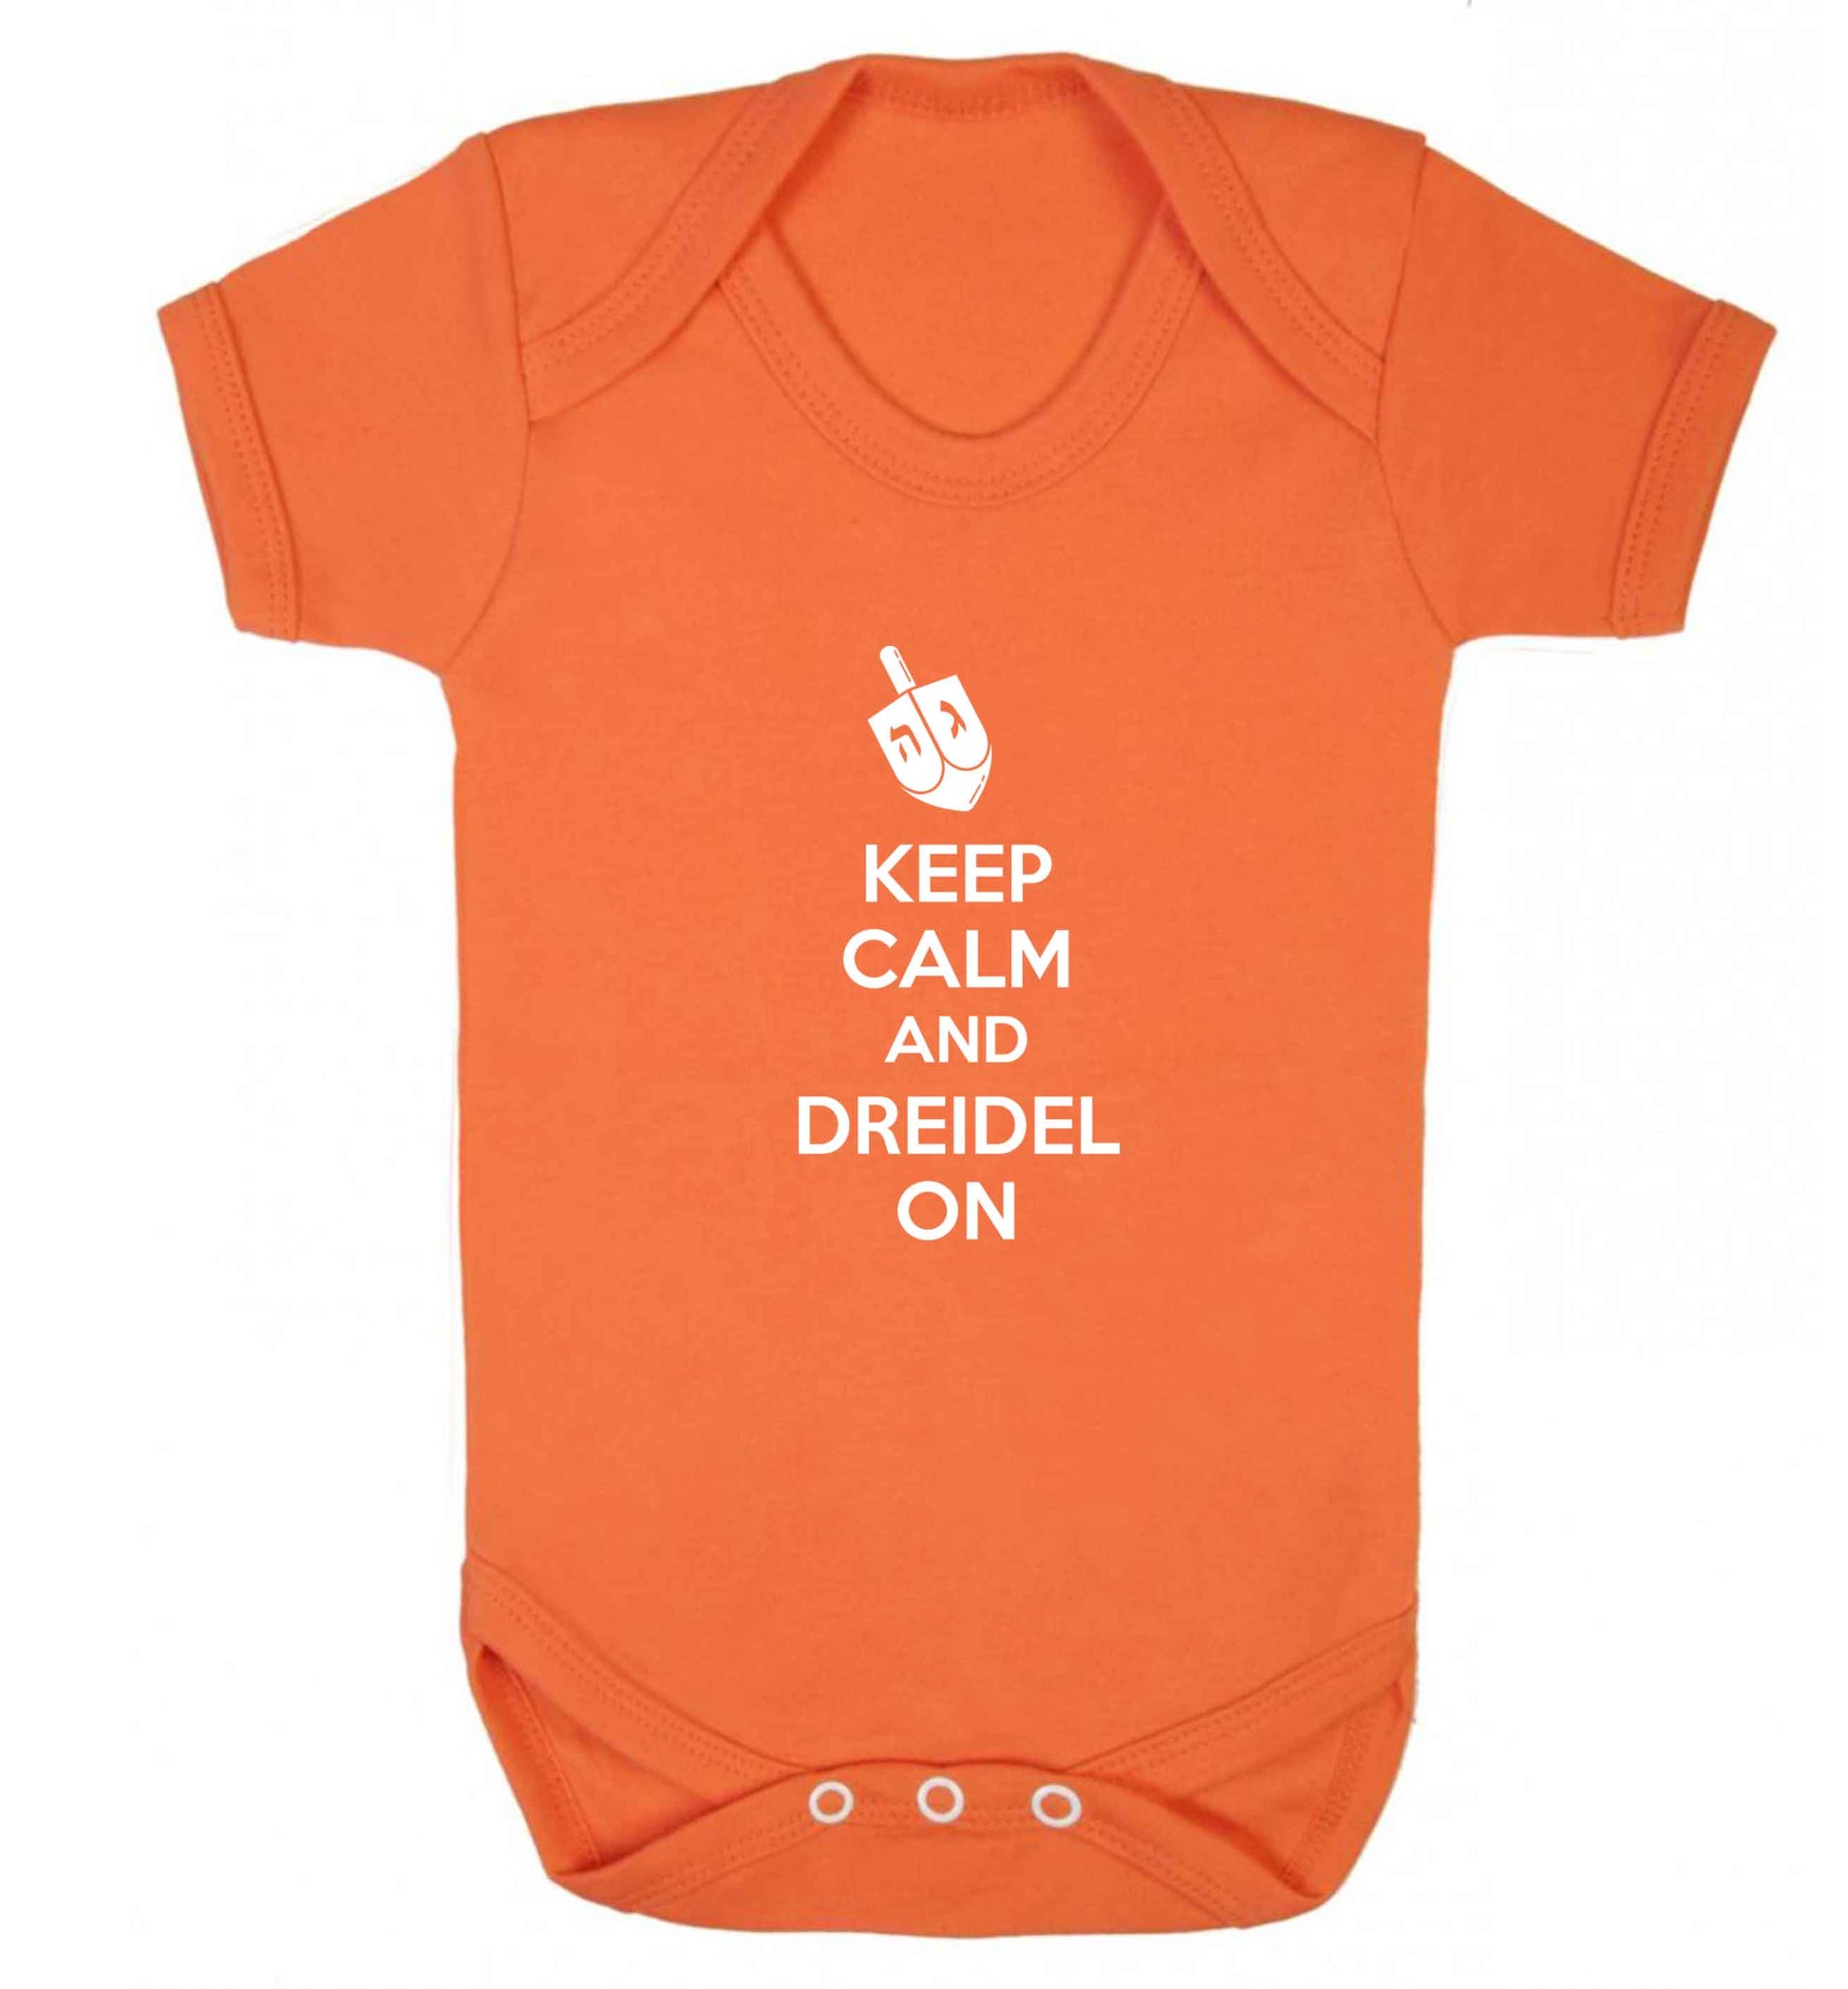 Keep calm and dreidel on baby vest orange 18-24 months